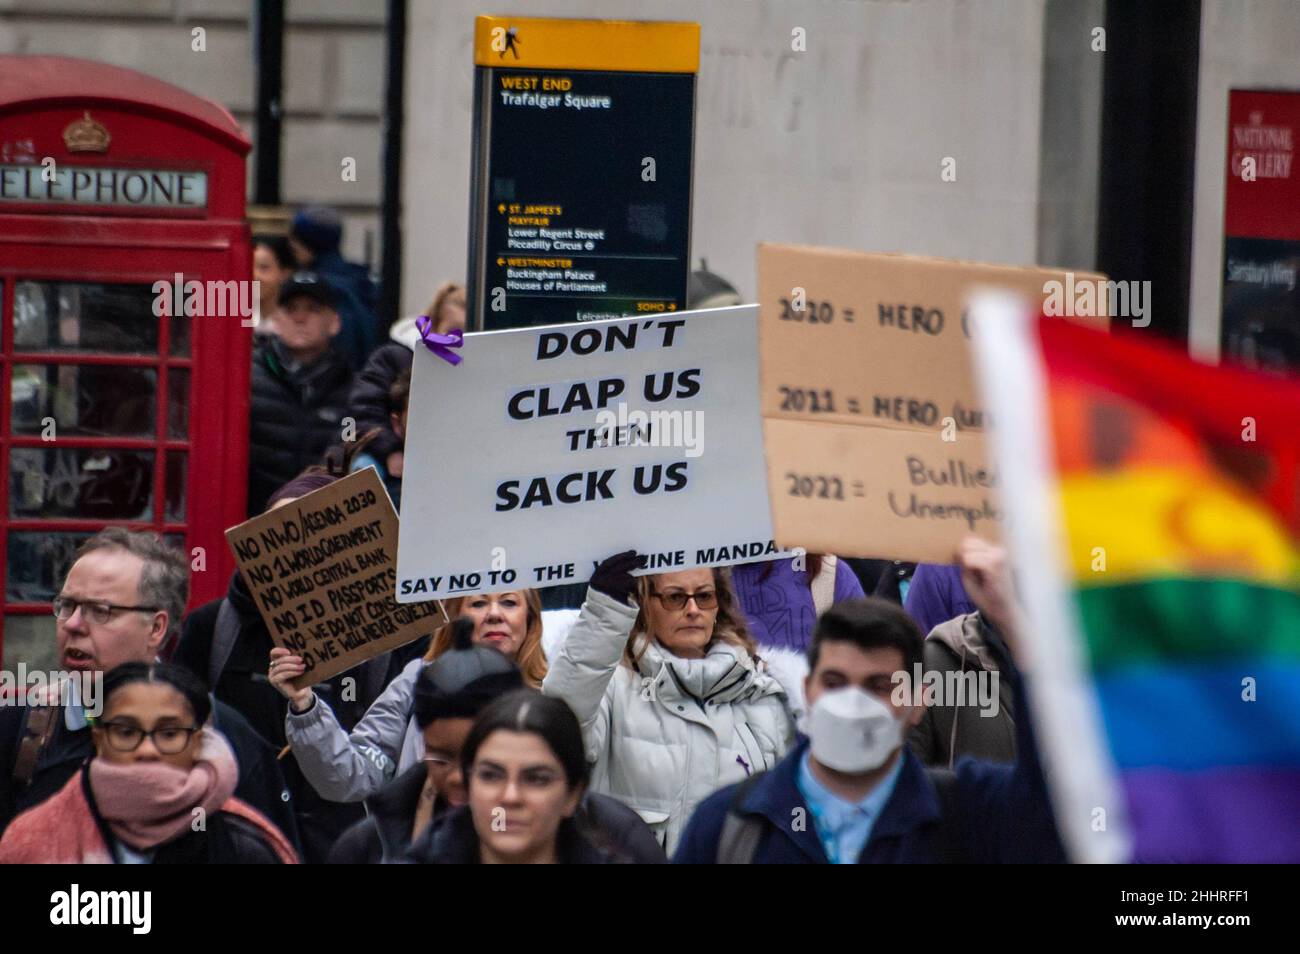 LONDRA, INGHILTERRA- 22 gennaio 2022: I manifestanti che hanno partecipato alla protesta del NHS100K contro i mandati di vaccinazione Foto Stock